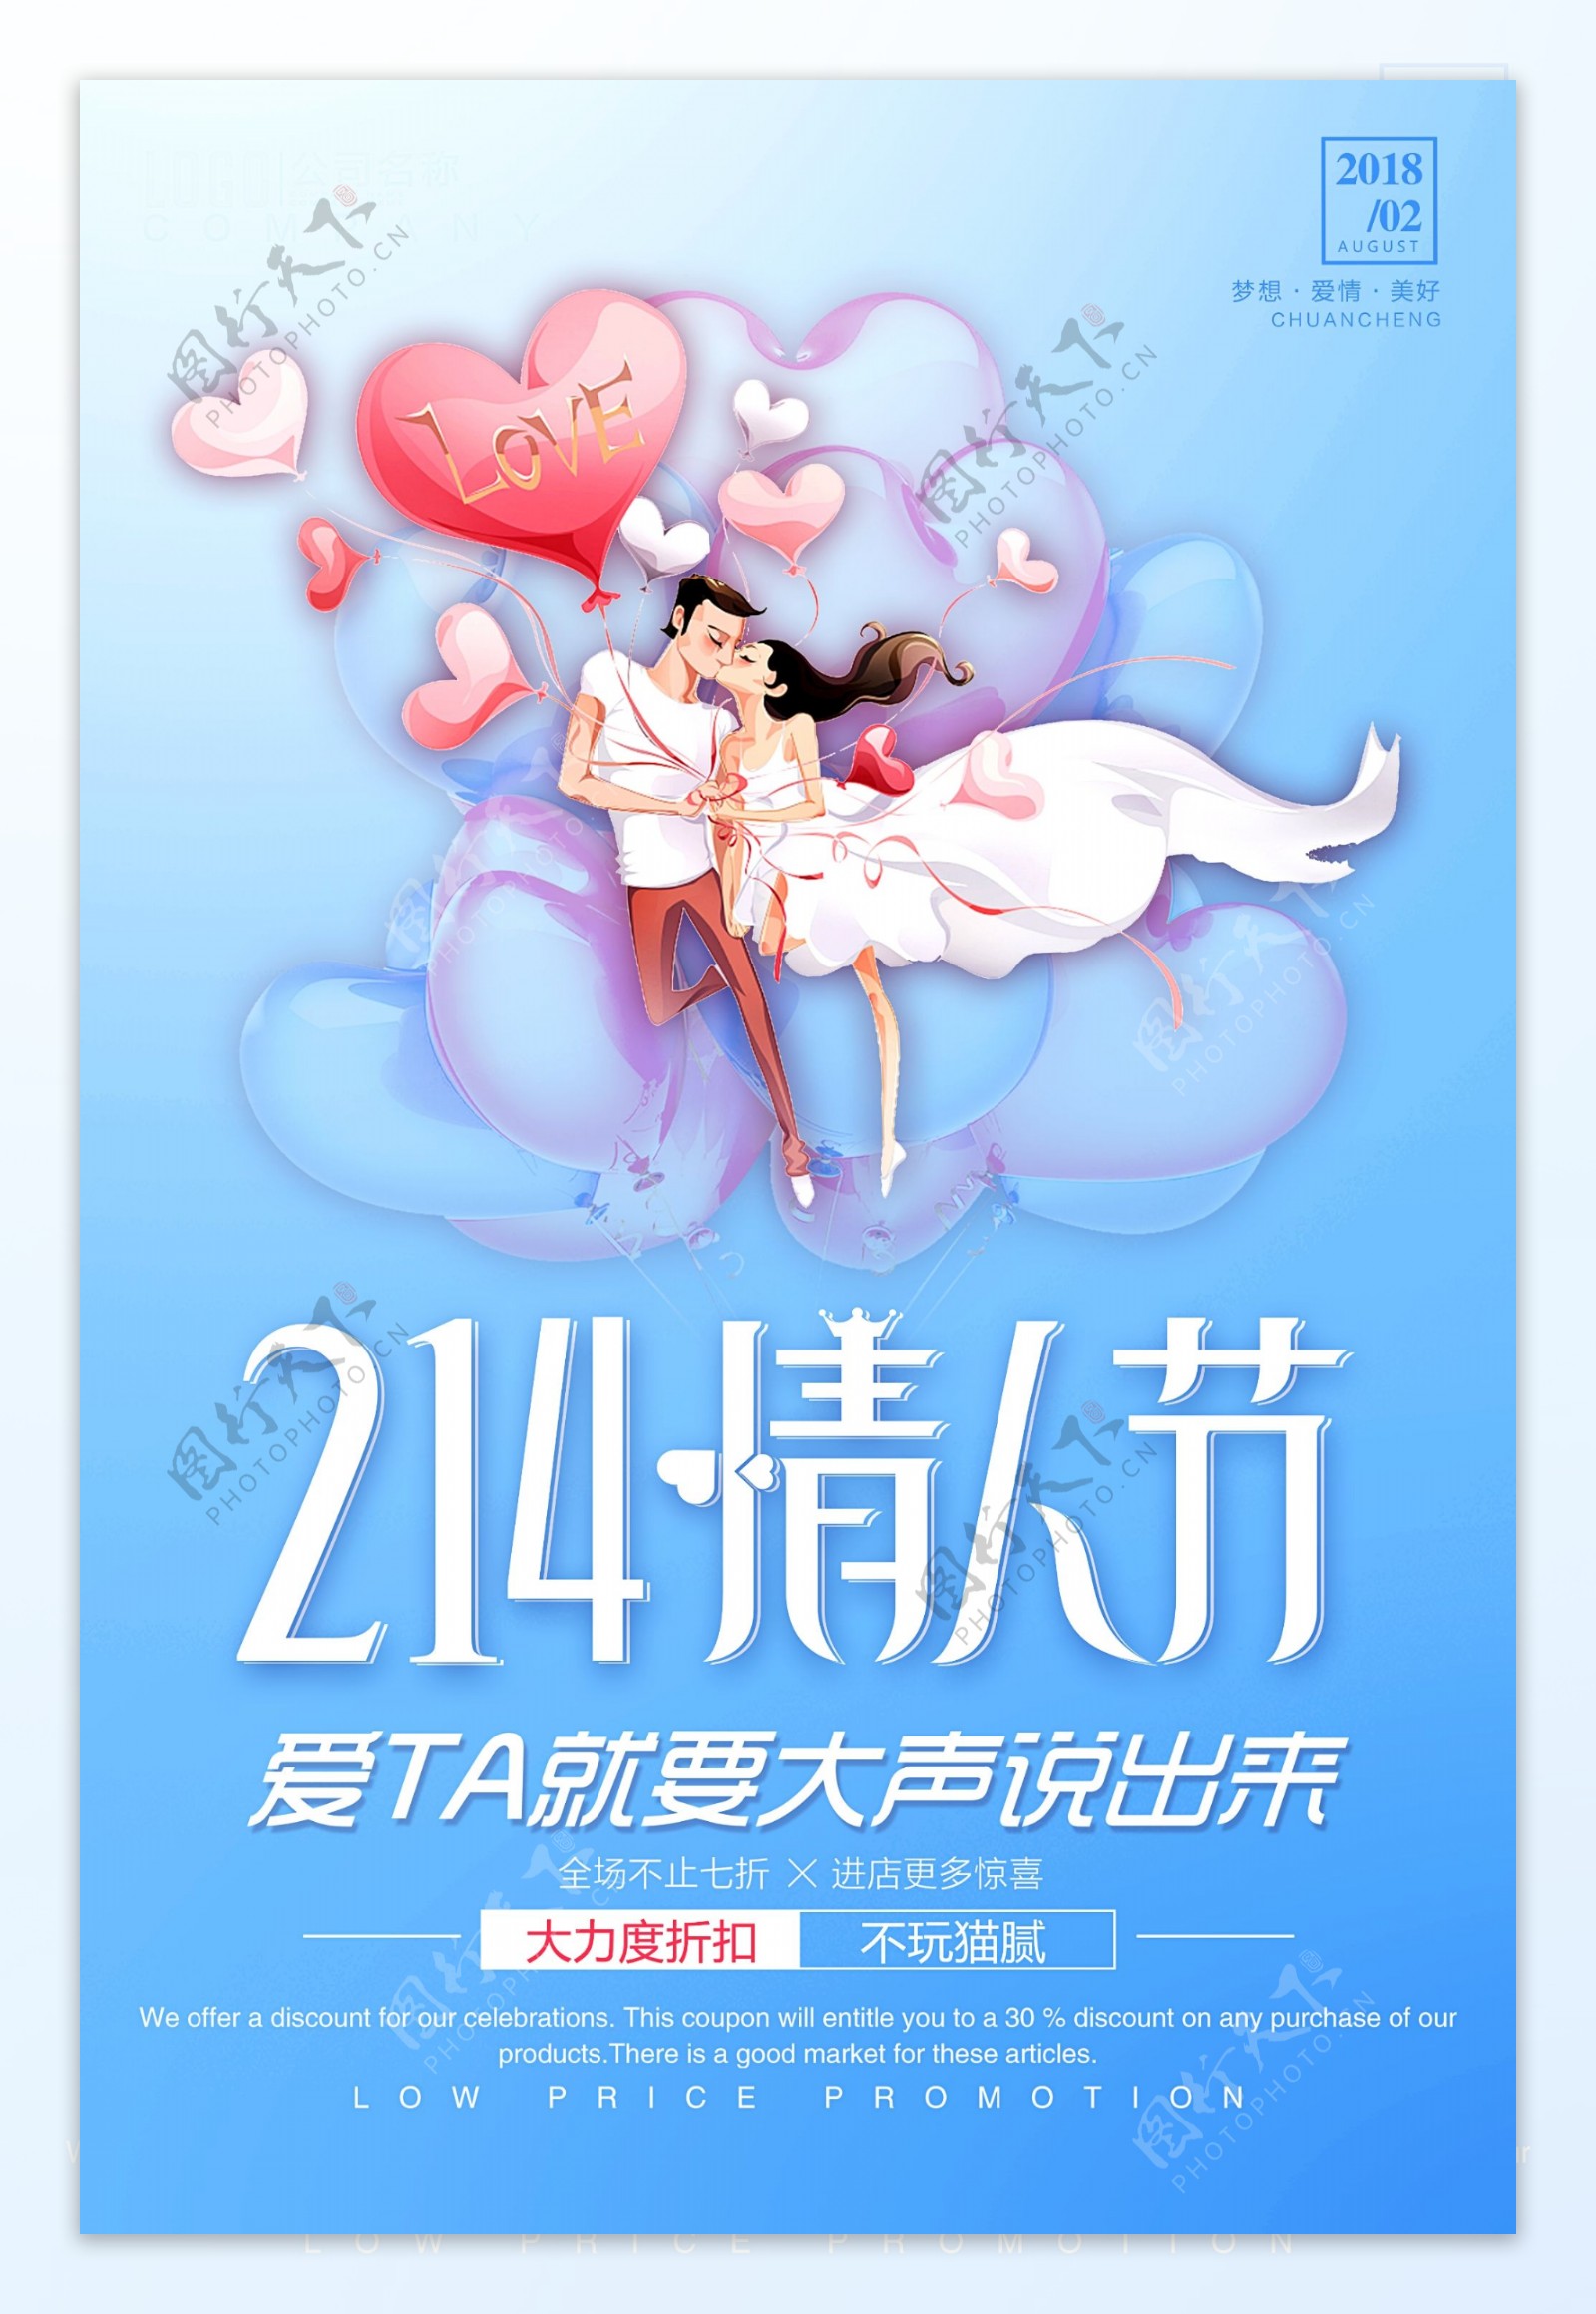 214浪漫情人节海报设计